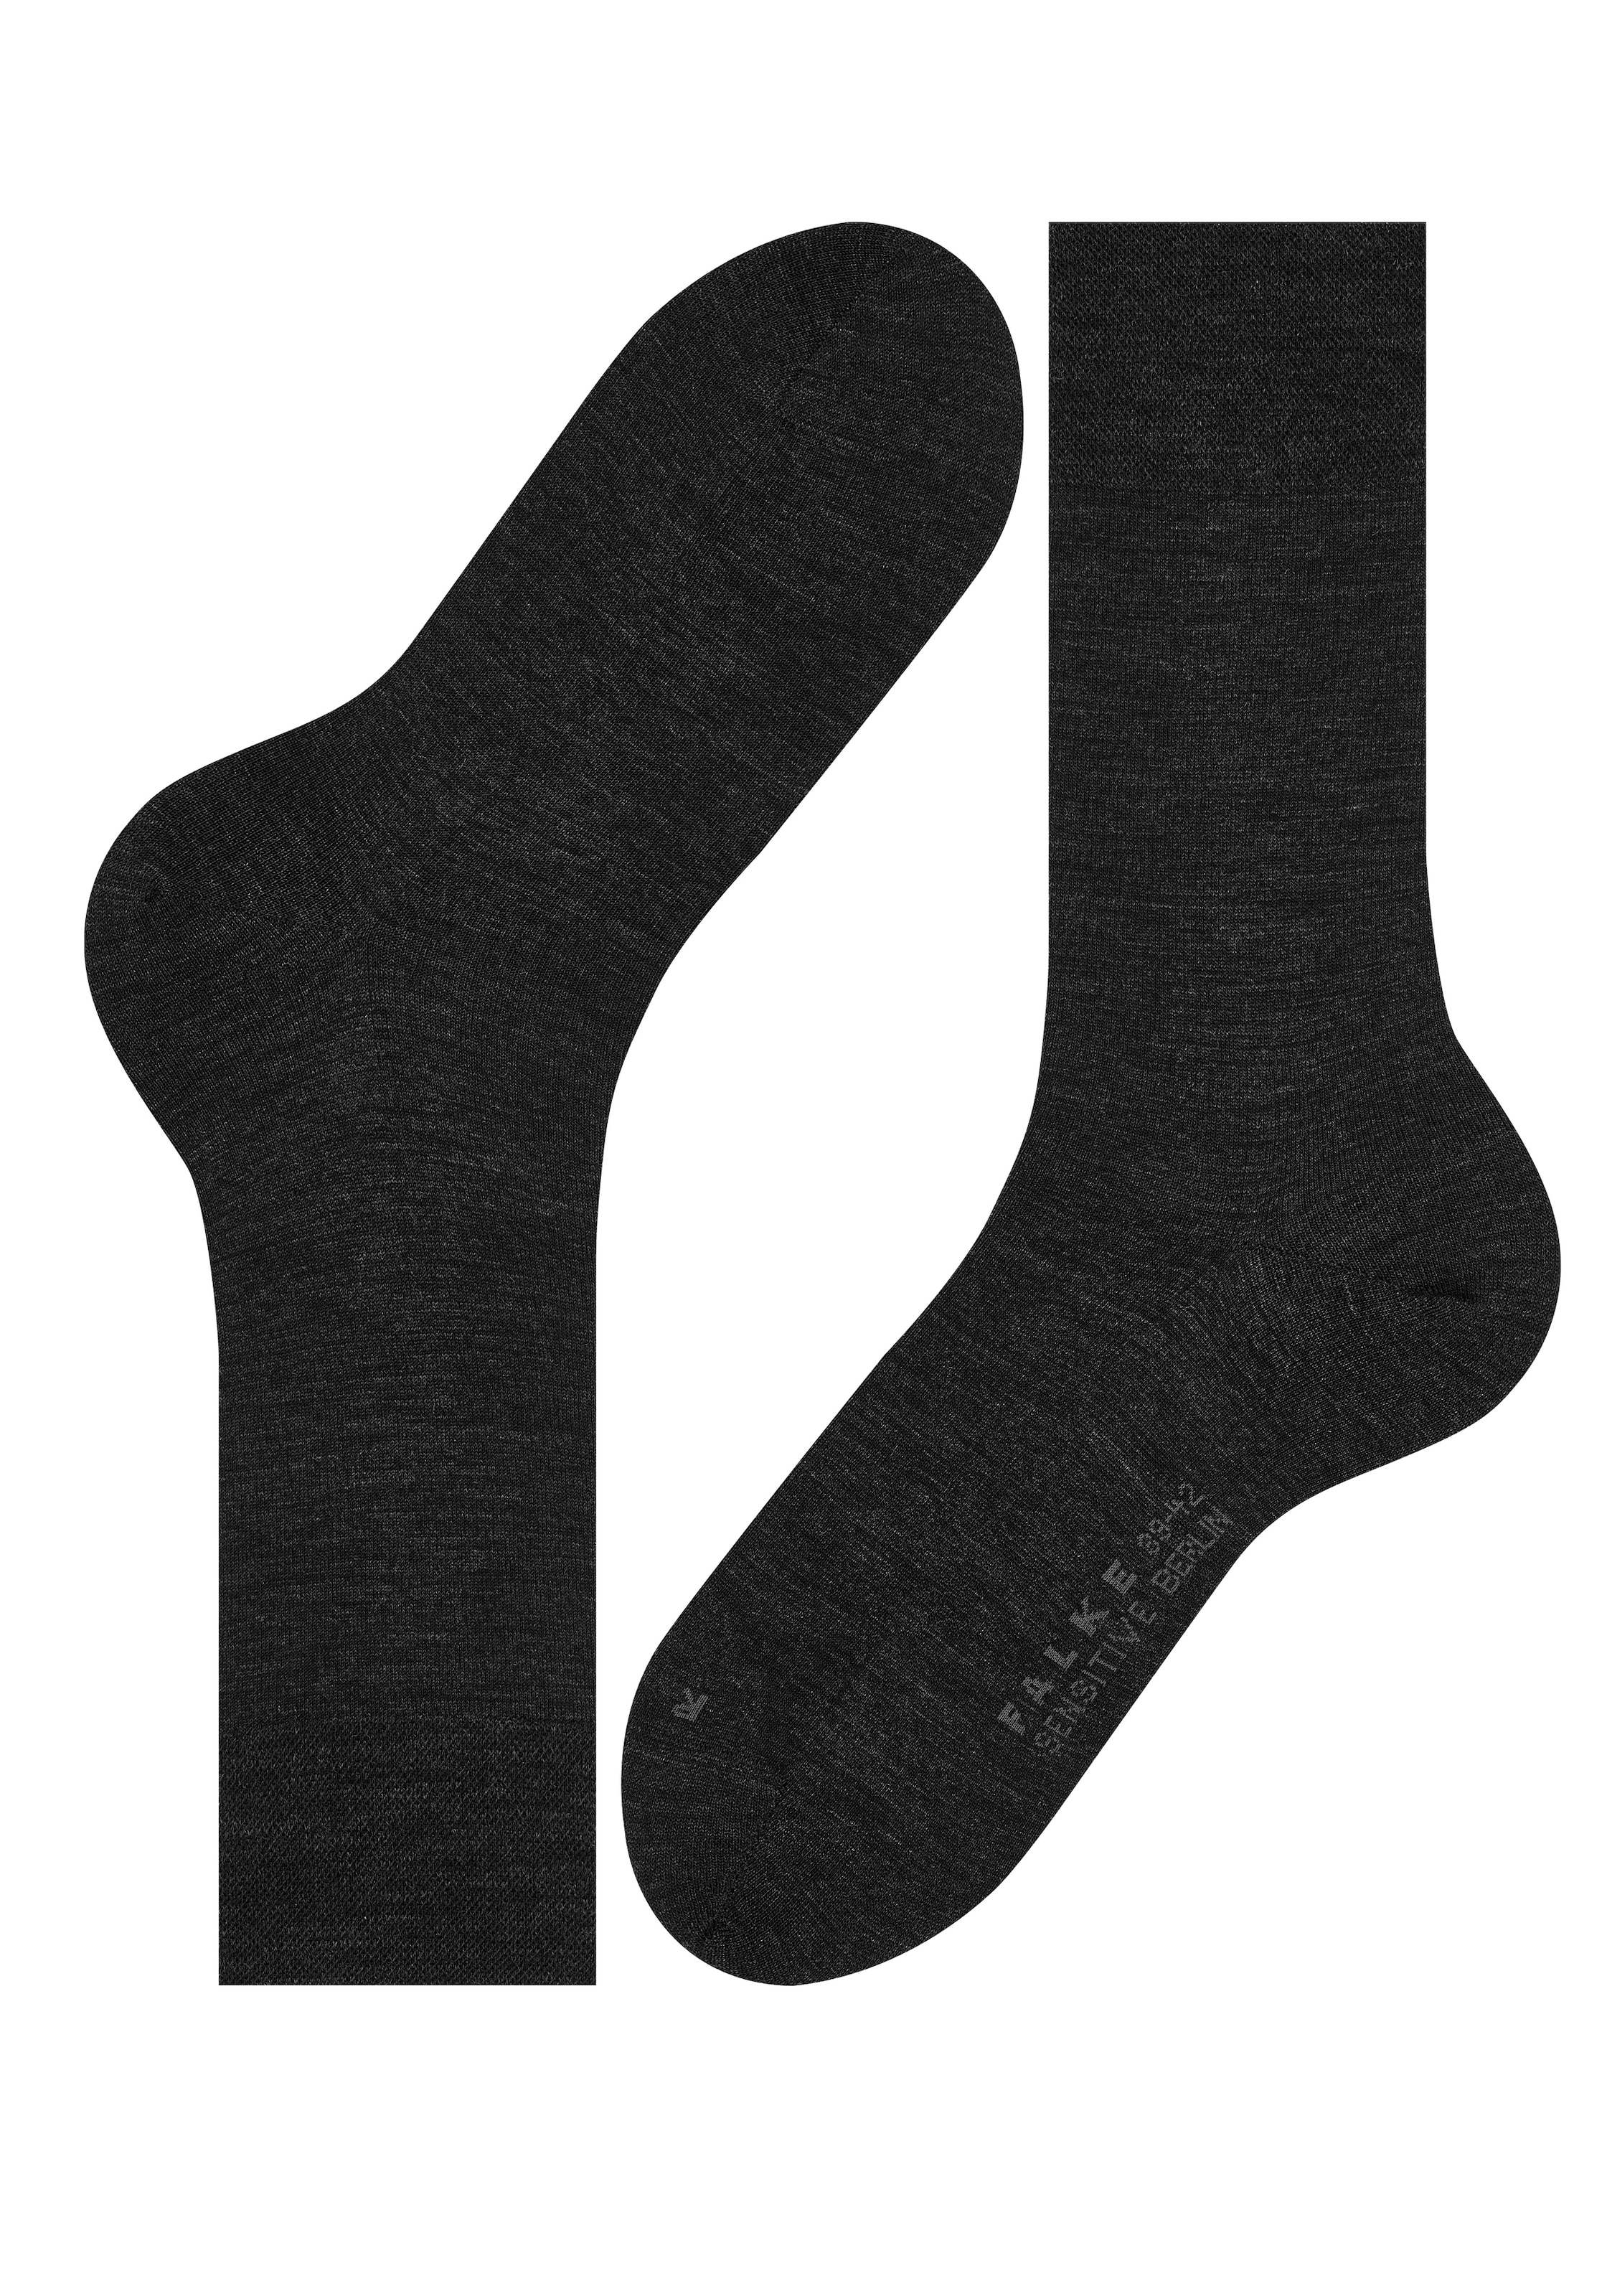 OTTO sensitve 2 (Packung, bei Berlin«, Gummi kaufen Bündchen Paar), online »Sensitive Socken mit ohne FALKE